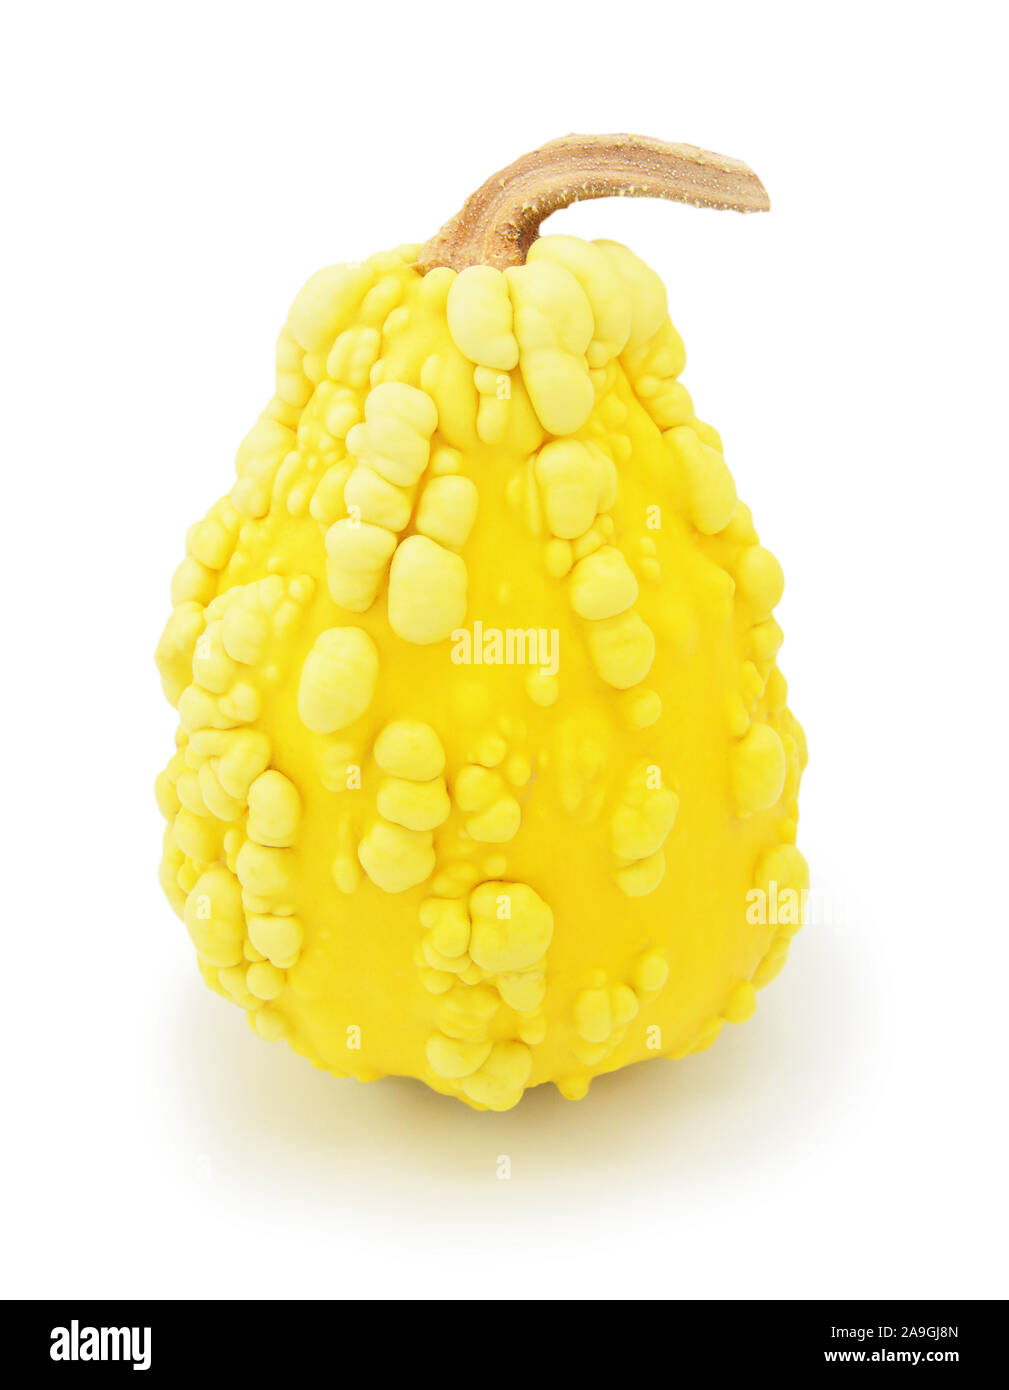 Ornementales hautes warted gourd à peau jaune et grumeleuse, forme inhabituelle sur un fond blanc Banque D'Images